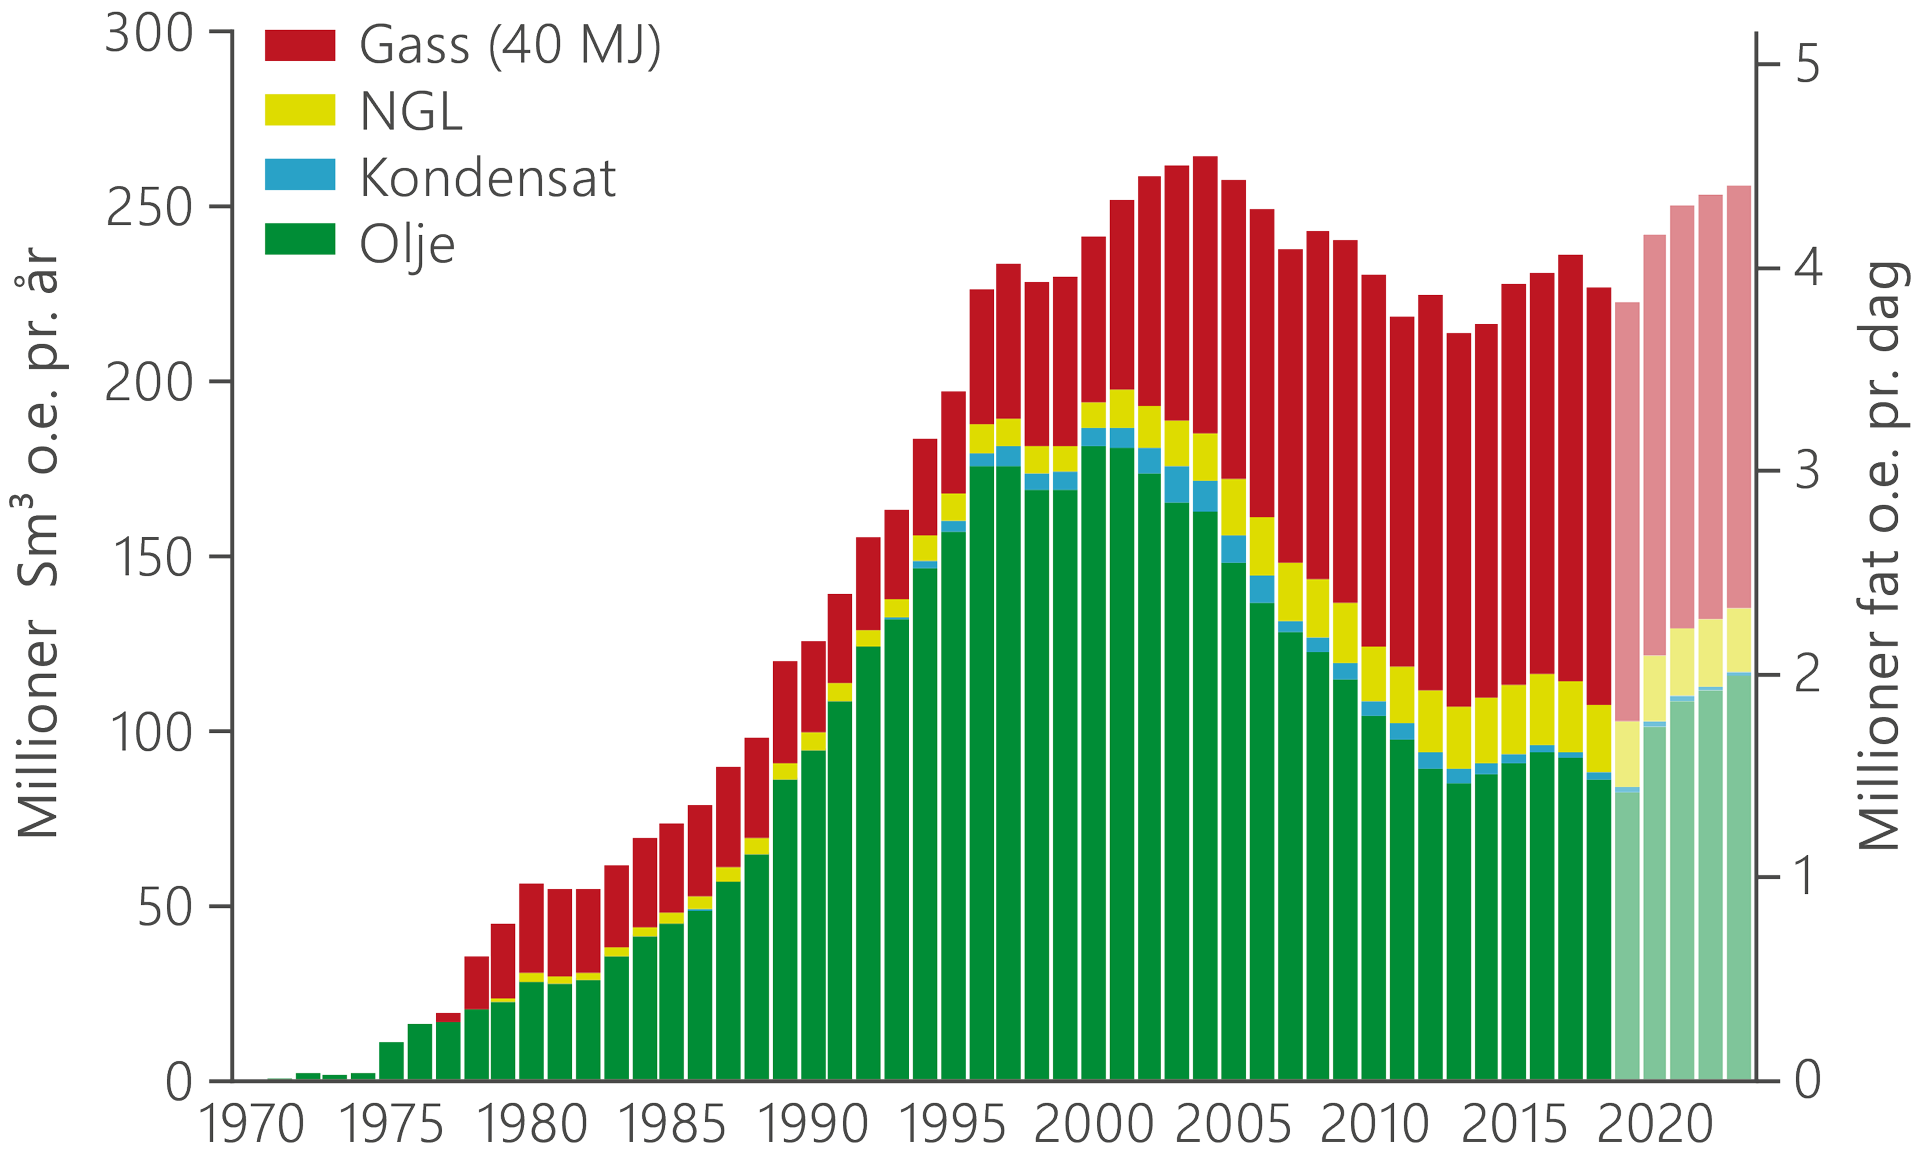 Graf som viser historisk produksjonsutvikling, inkludert prognoser fram mot 2023